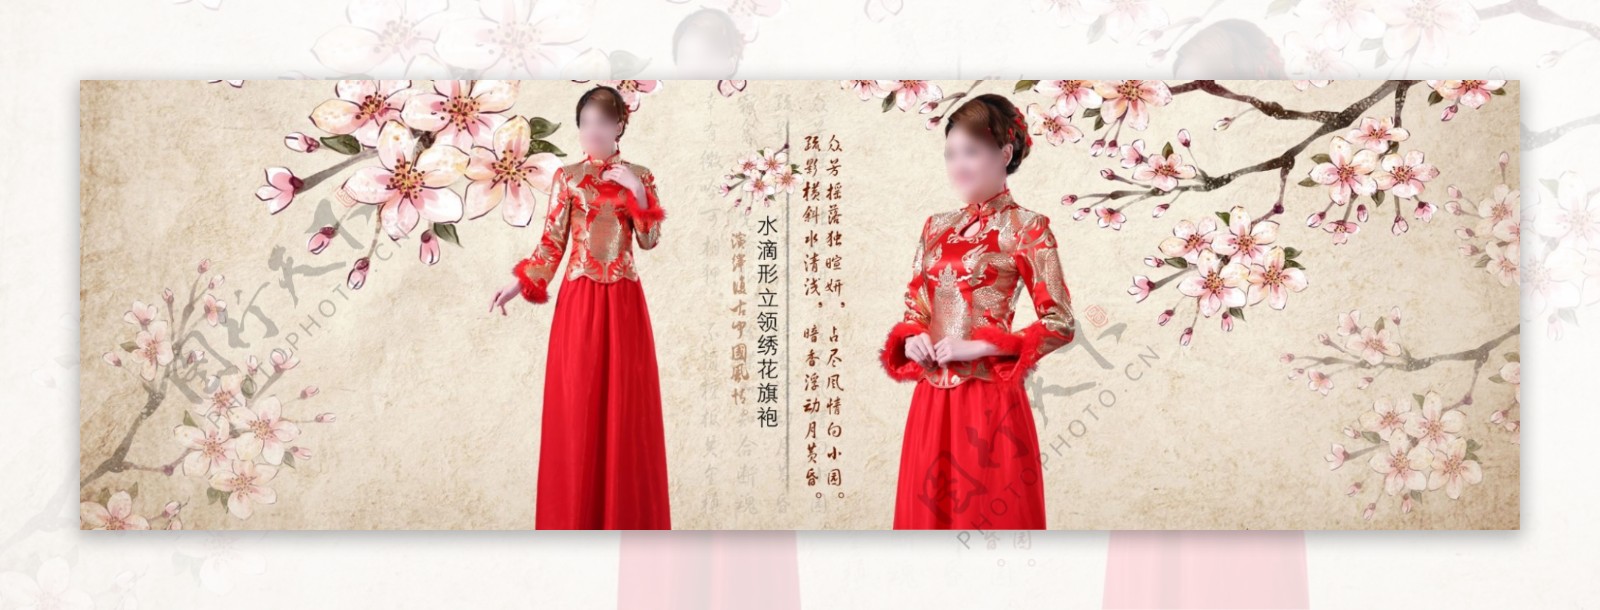 中国红古典女装淘宝女装海报